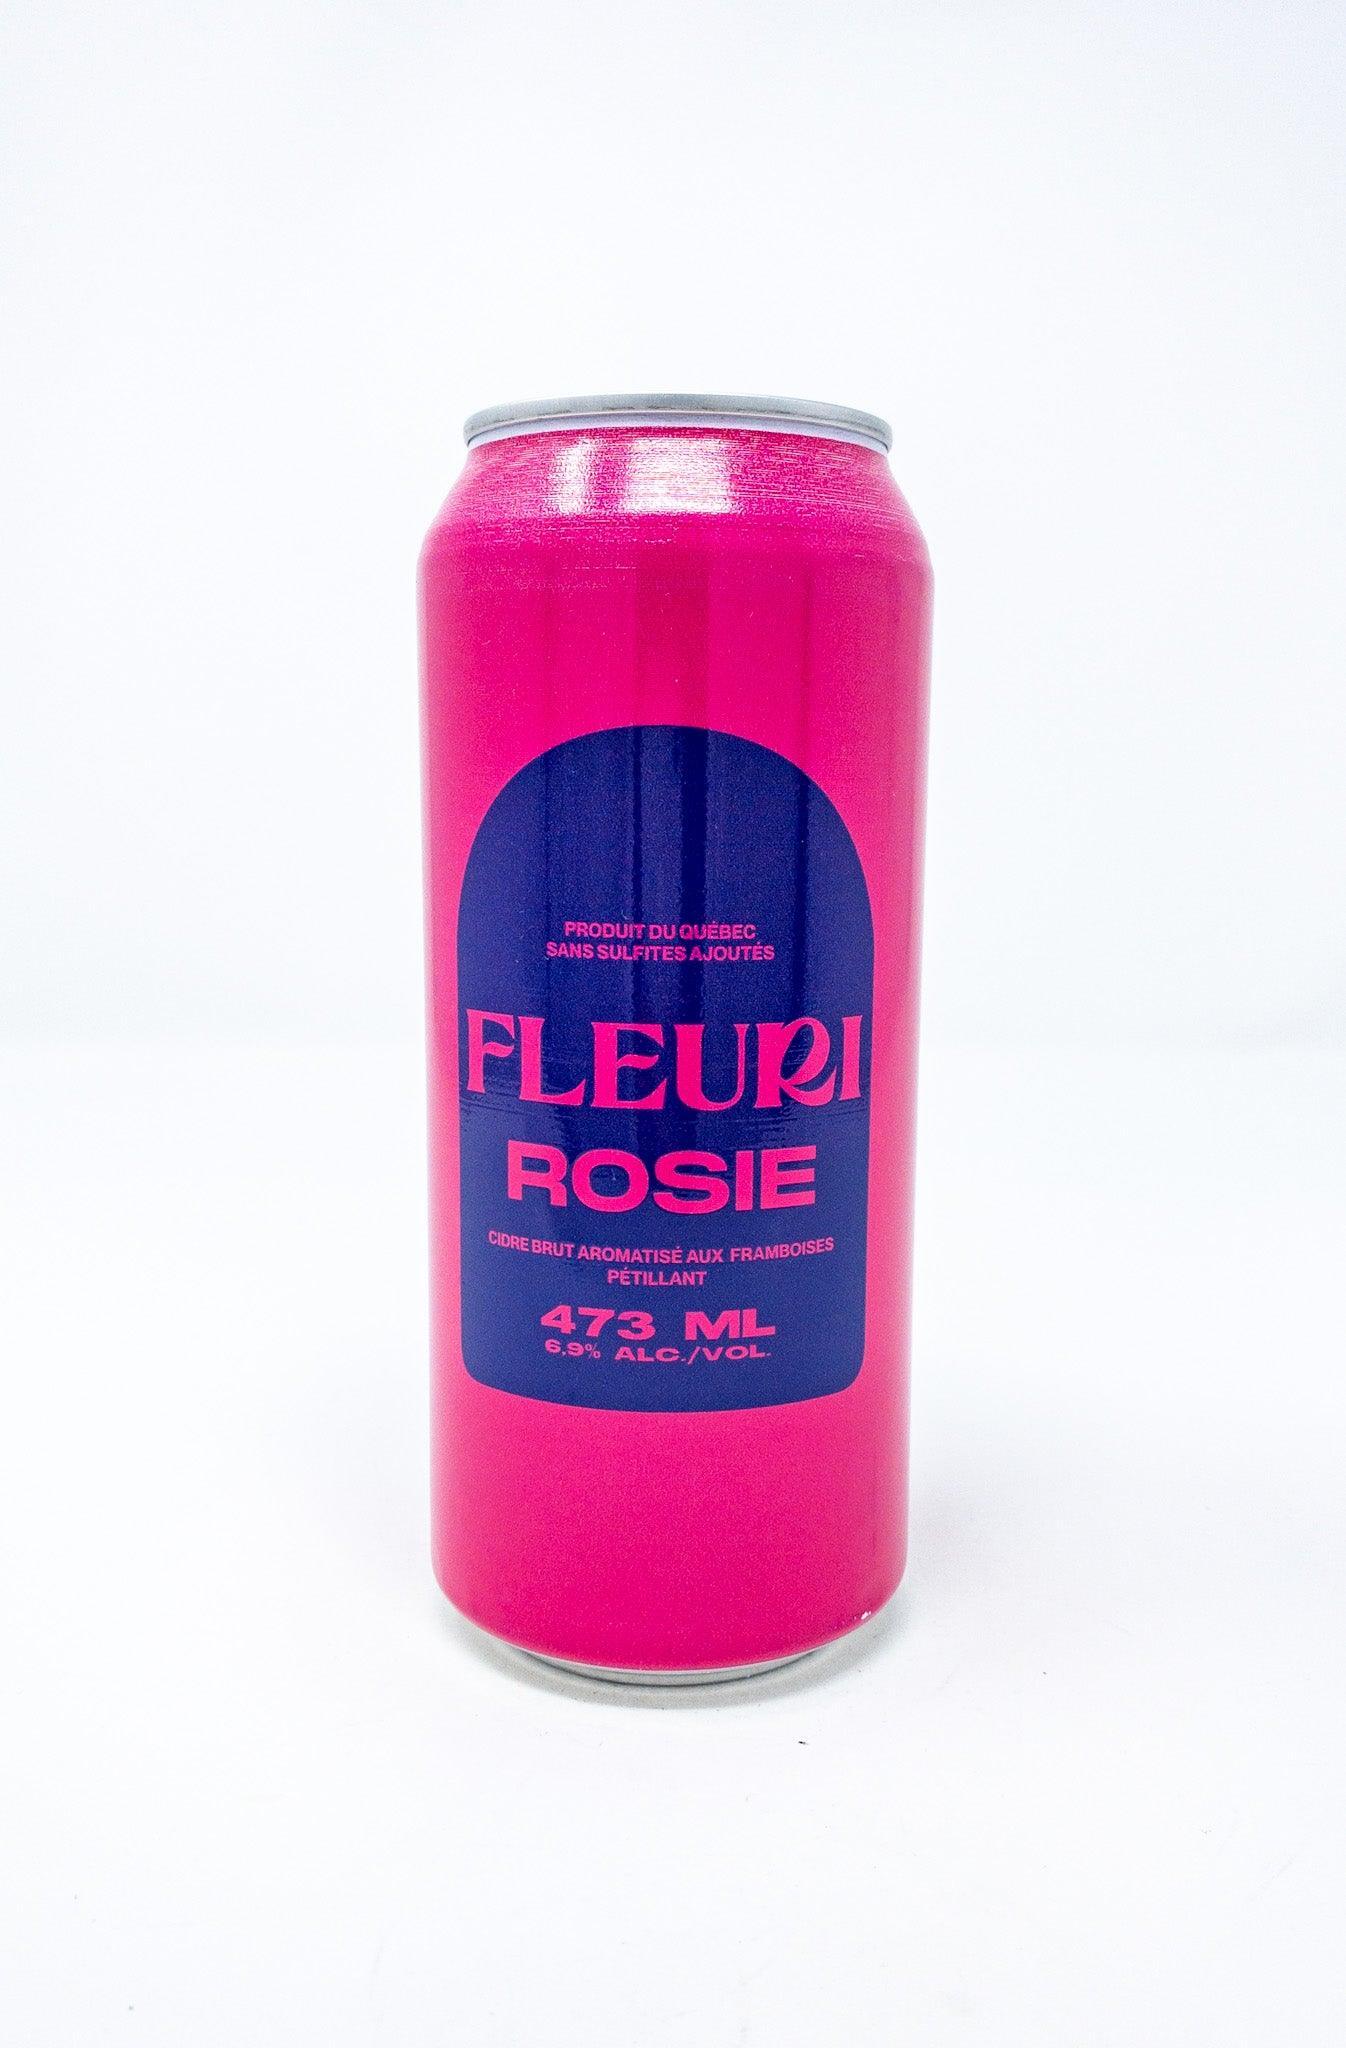 Fleuri Rosie - Cidre - Fleuri Compagnie de Cidre - Beau Dégât Bièrerie de Quartier